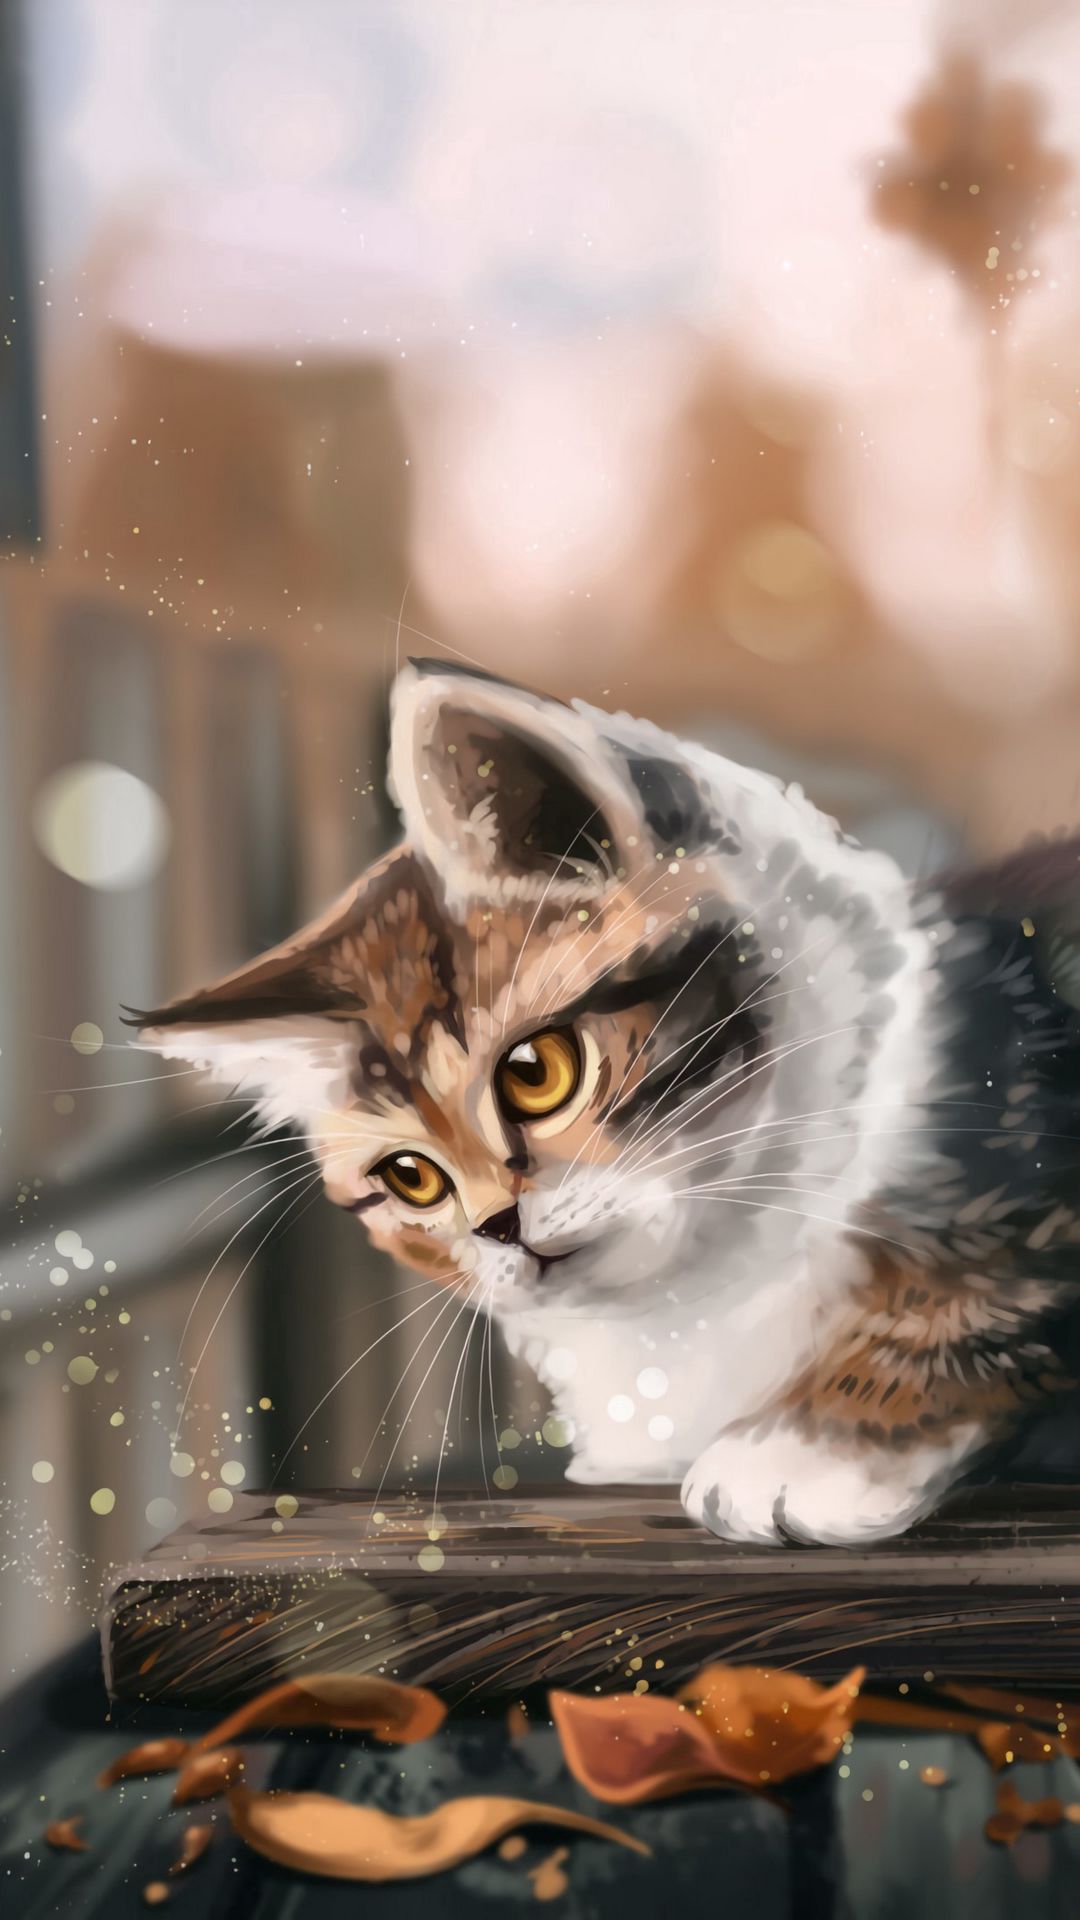 Tải miễn phí bộ ảnh hình nền mèo con đẹp và đáng yêu cho iphone - Thucanh.vn - Website chuyên thông tin dành cho thú cưng, vật nuôi